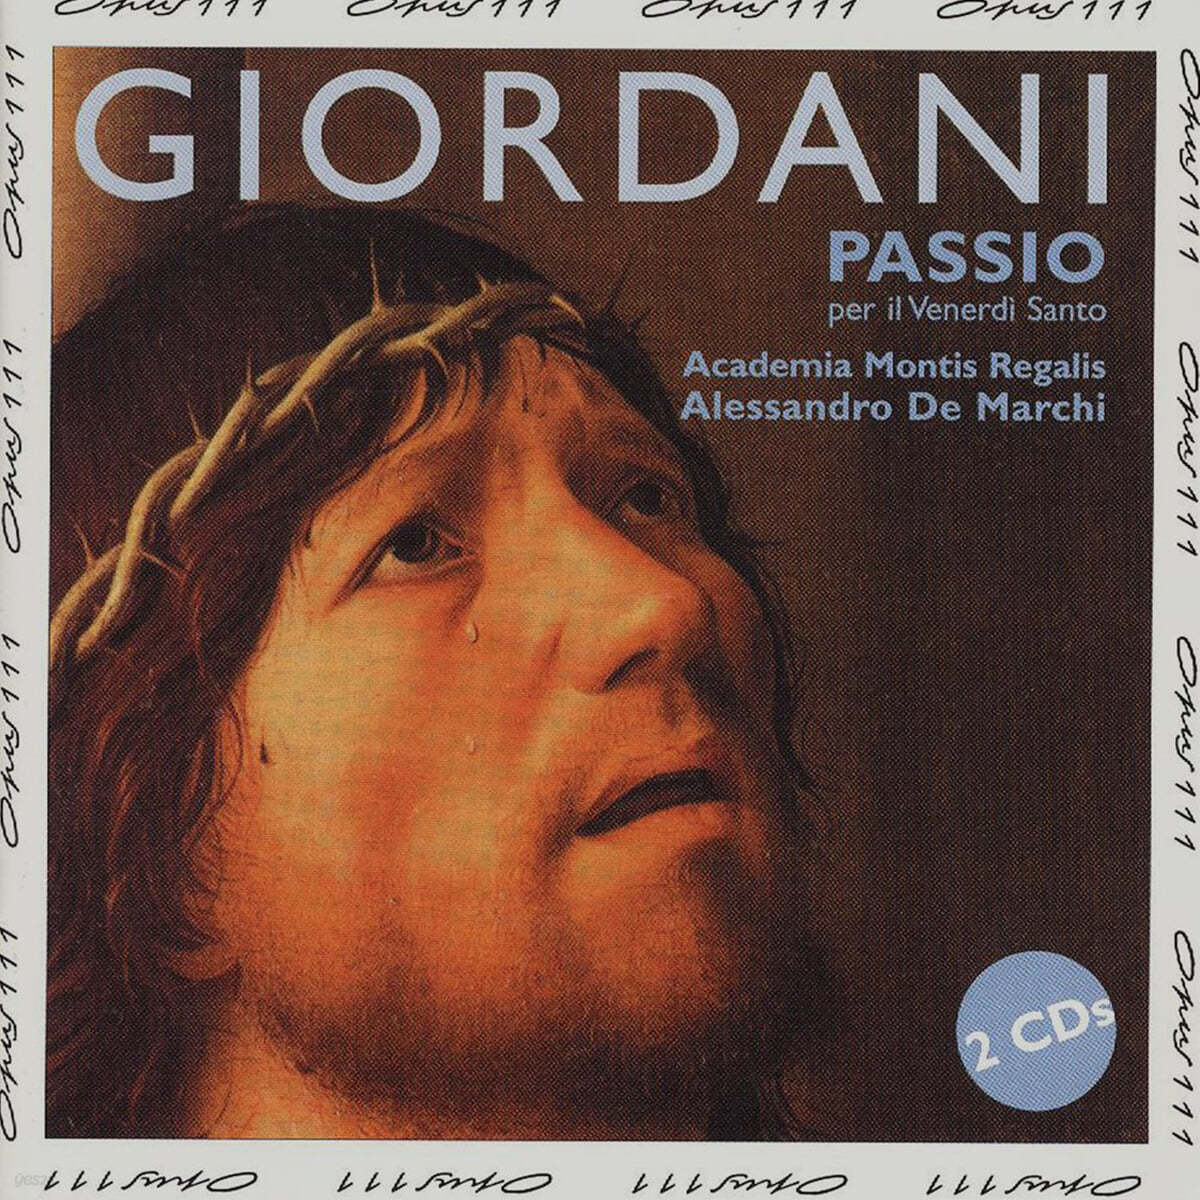 Alessandro De Marchi 조르다니: 파시오 페르 일 베네르디 산토 (Giuseppe Giordani: Passio per il Venerdi Santo) 